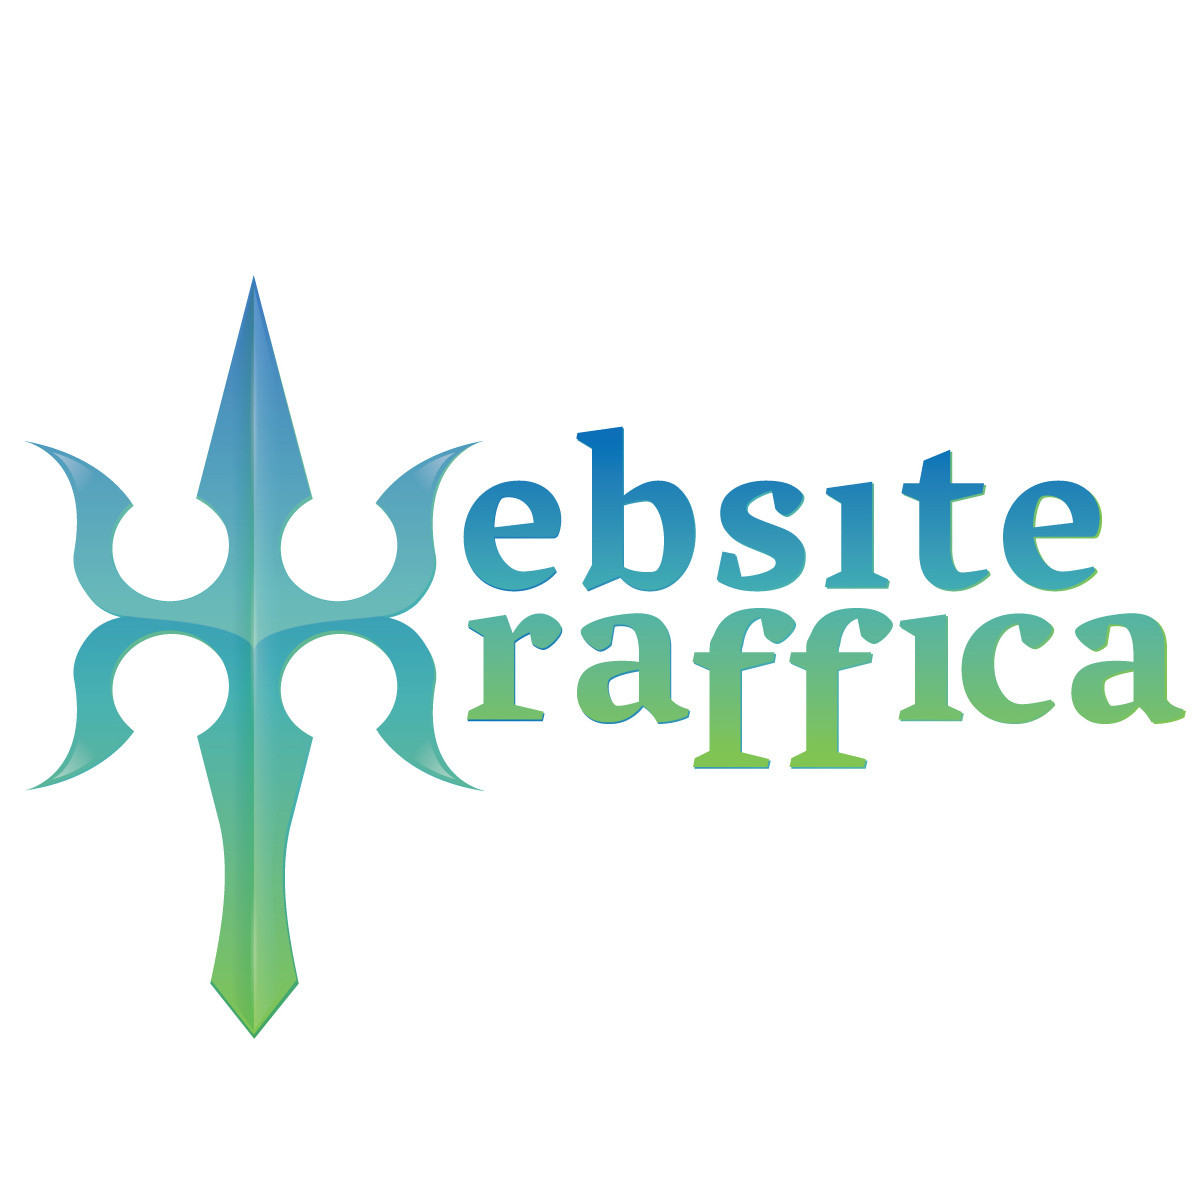 Website Traffica Logo